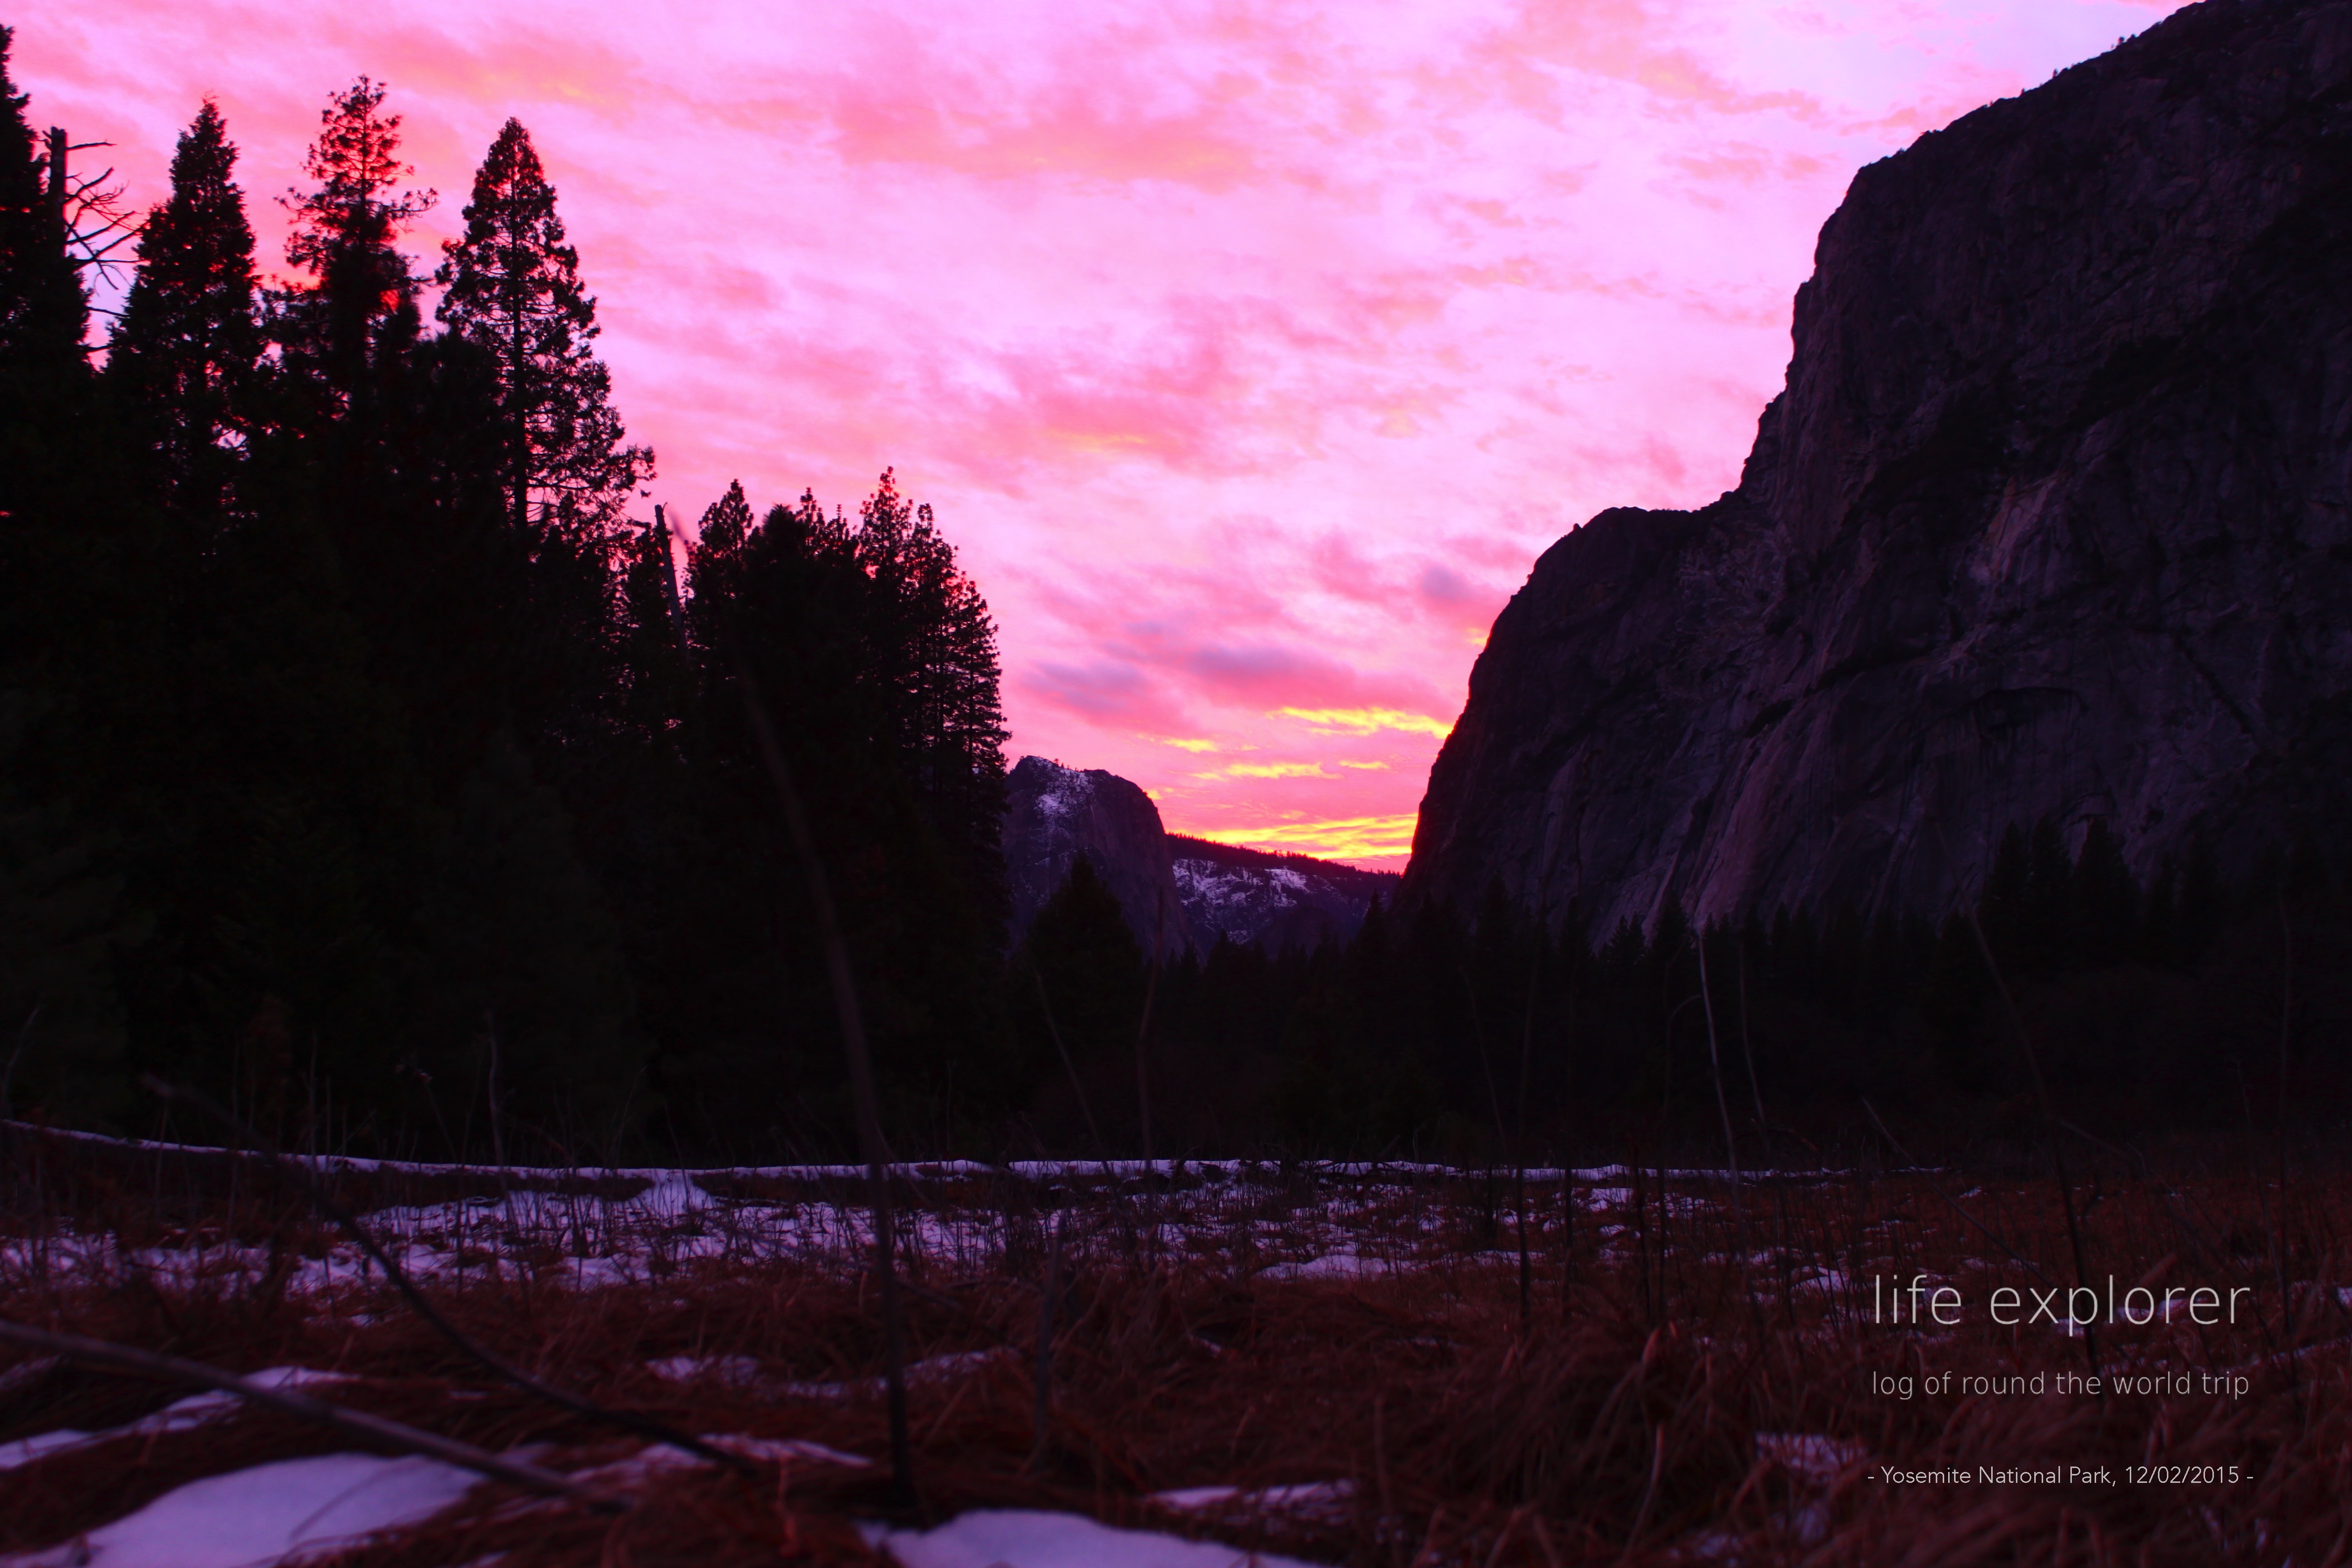 #21 世界で最もクライマーを魅了する岩「エル・キャピタン (ヨセミテ国立公園)」- The World’s Most Enthralling Rock for climbers “El Capitan (in Yosemite National Park)”